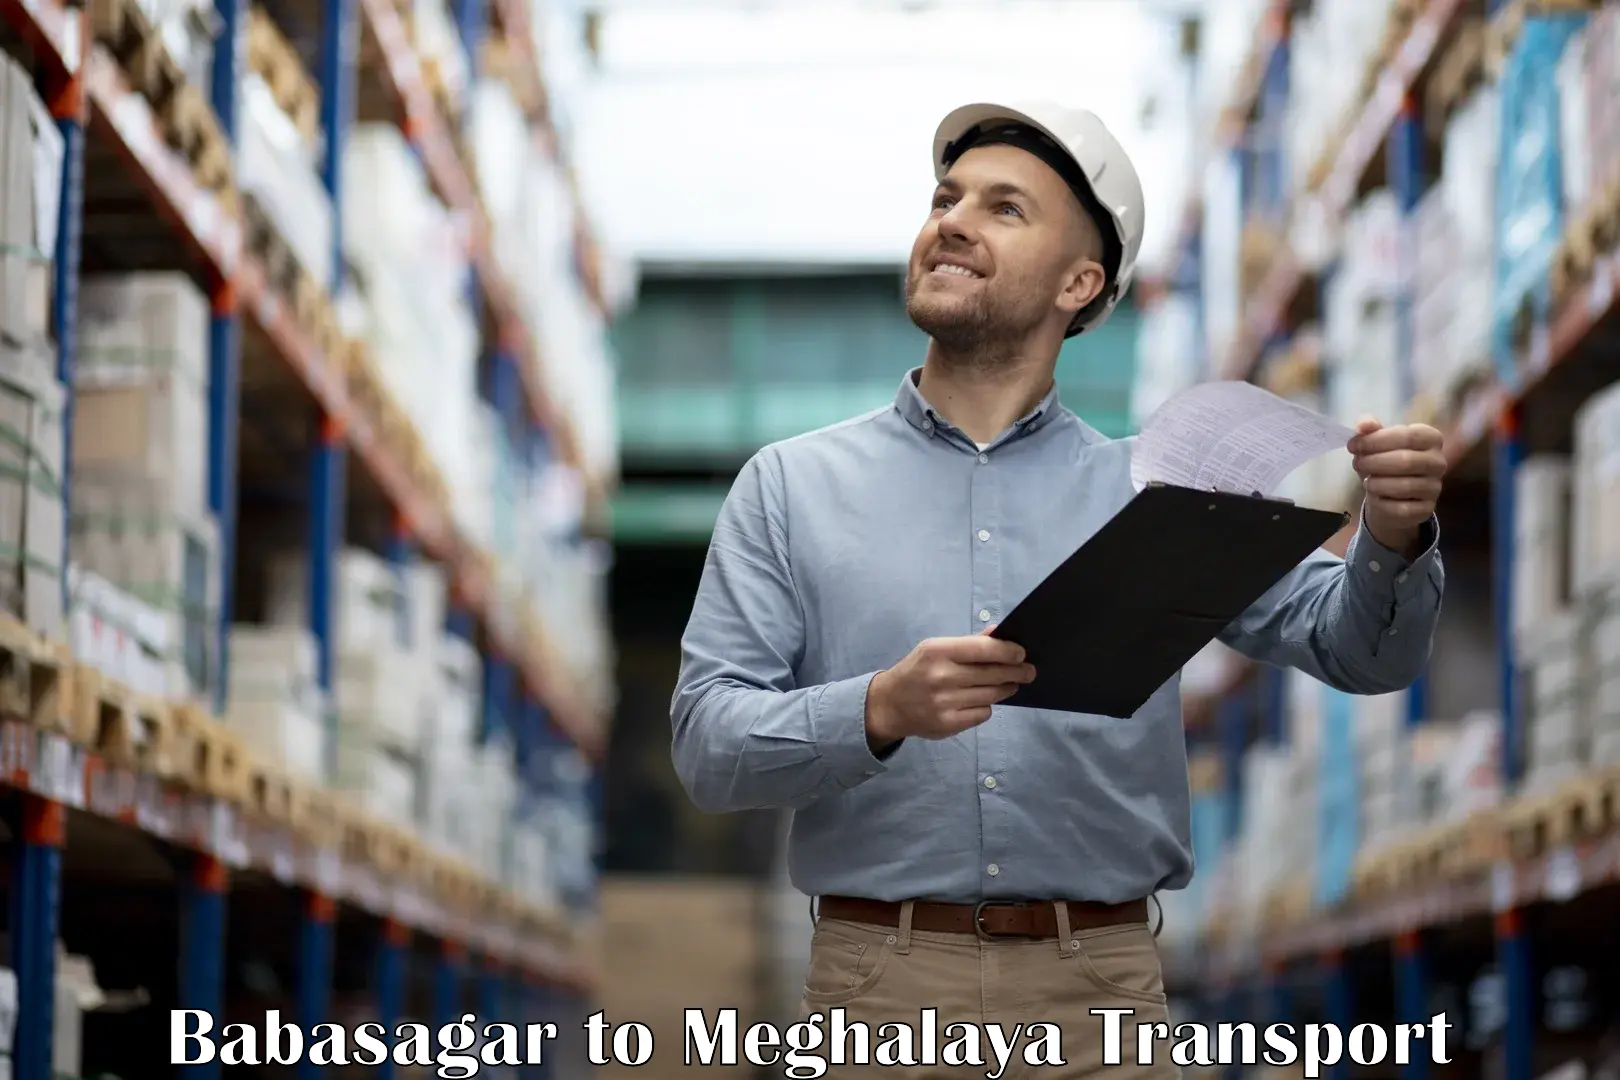 Furniture transport service Babasagar to West Khasi Hills